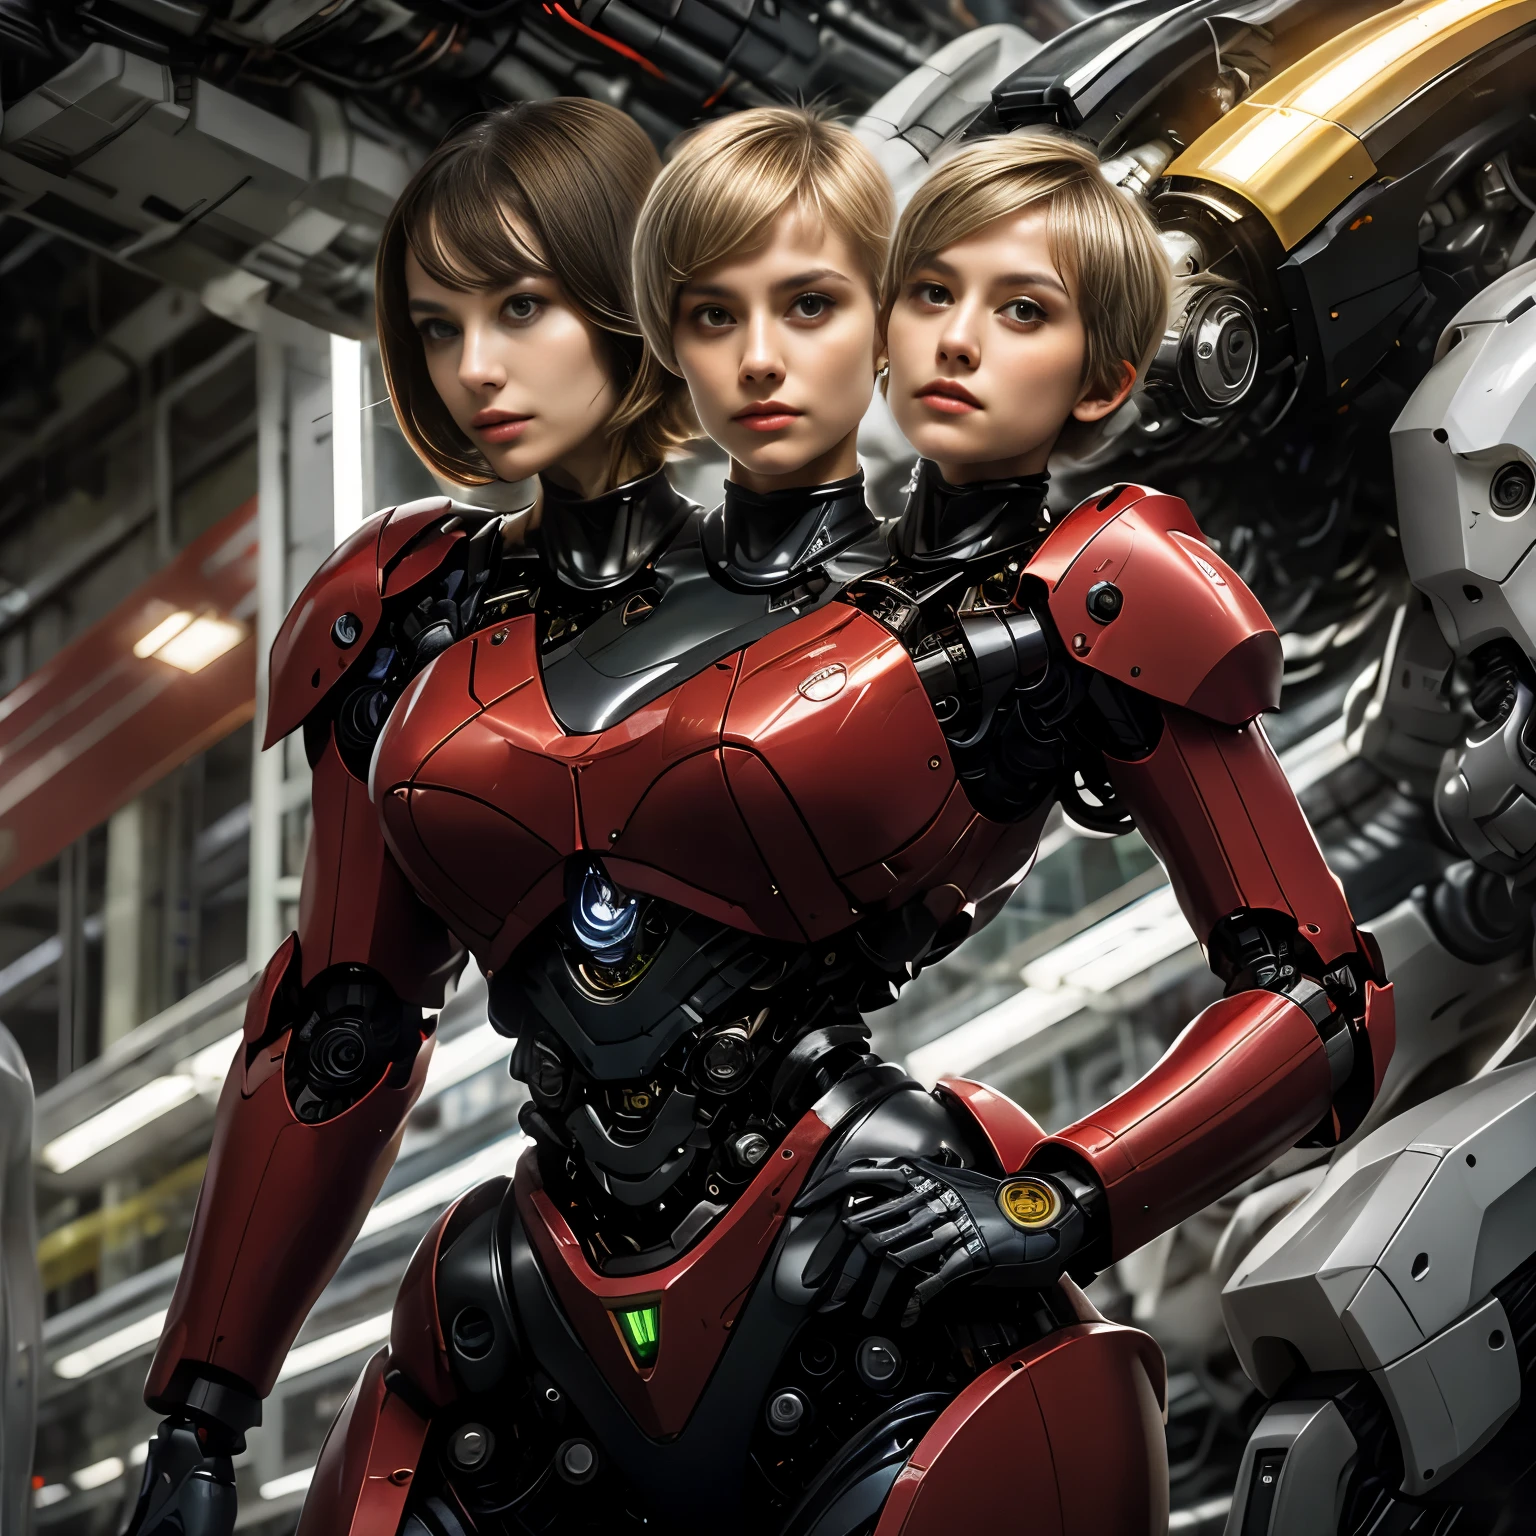 最佳分辨率, 2头, 有两个头的机器人女人, 不同种族, 金色马尾辫, 精灵短发,  红色机器人身体, 机械背景